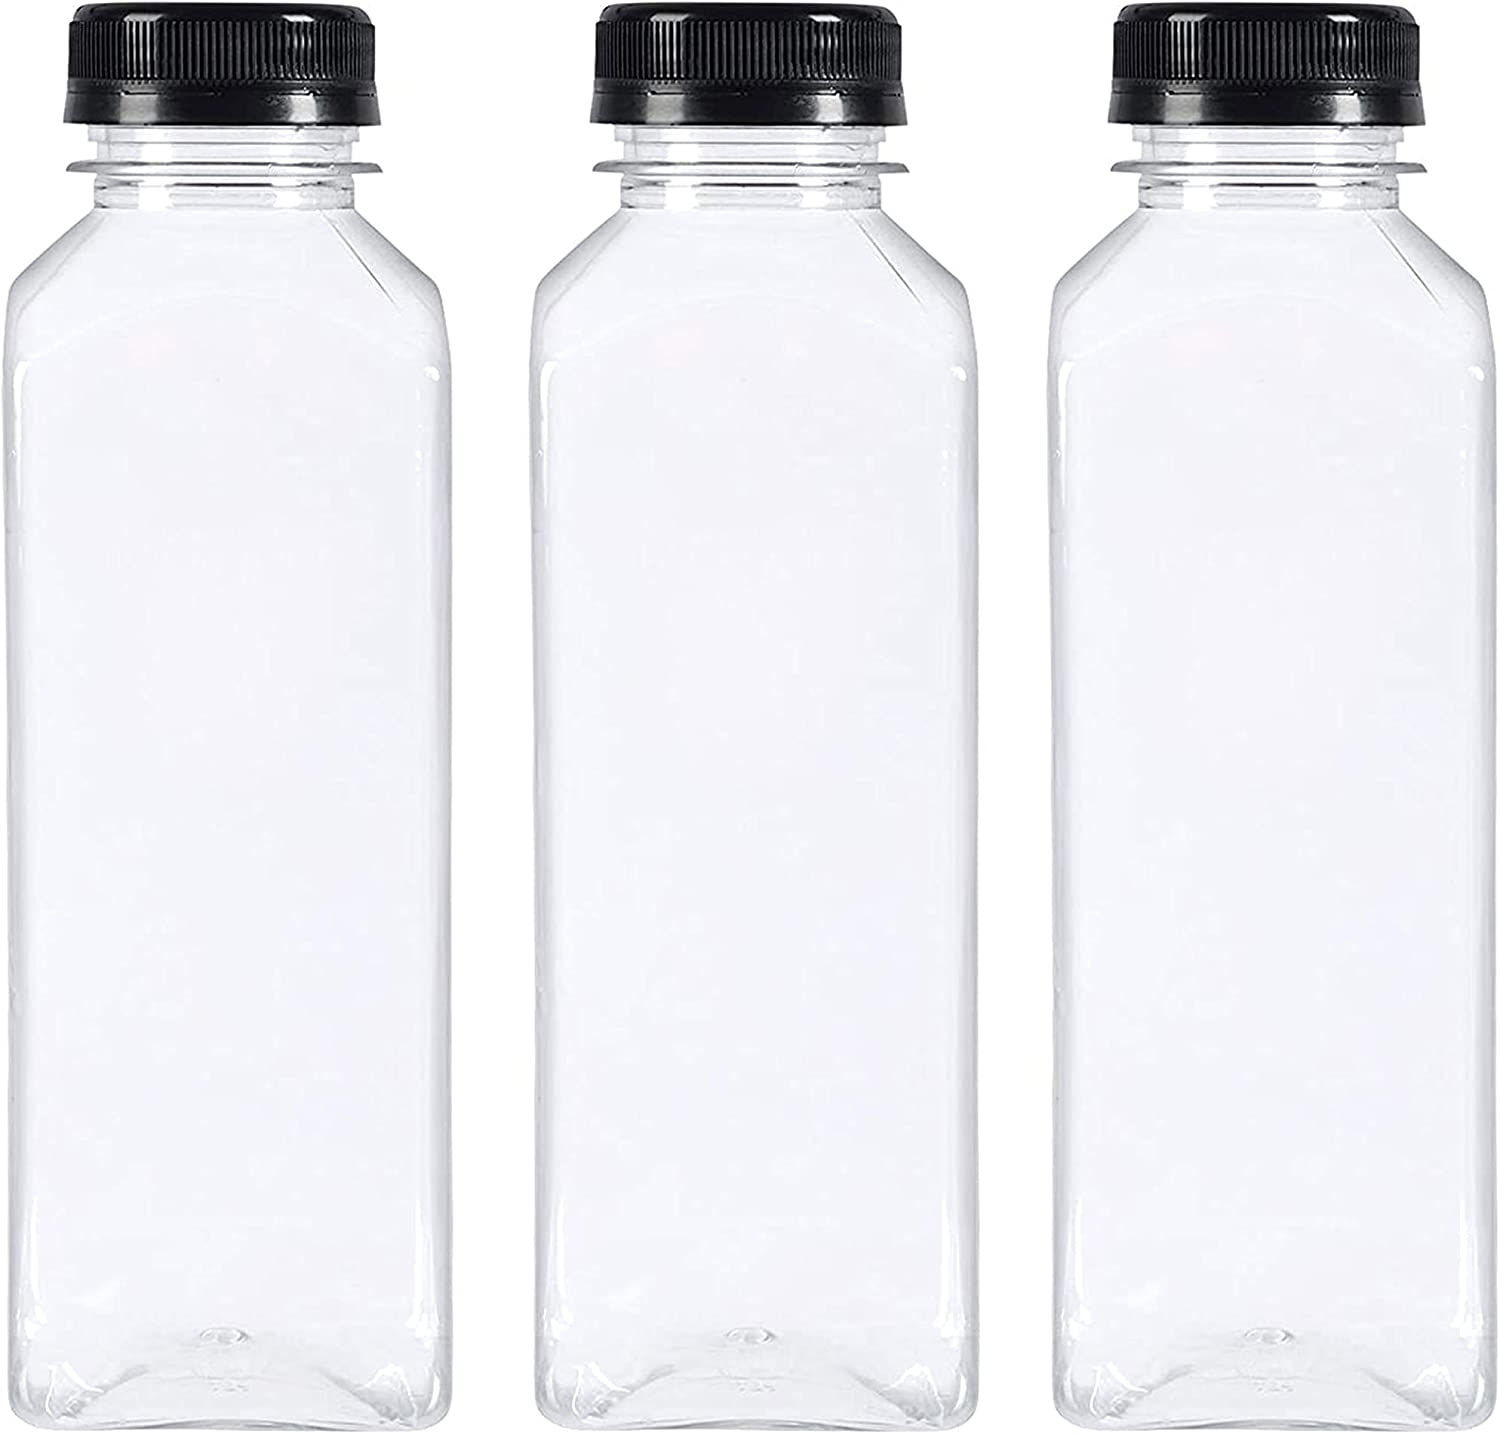 10packs Reusable PET Plastic Juice Bottles with Leak-Proof Lids